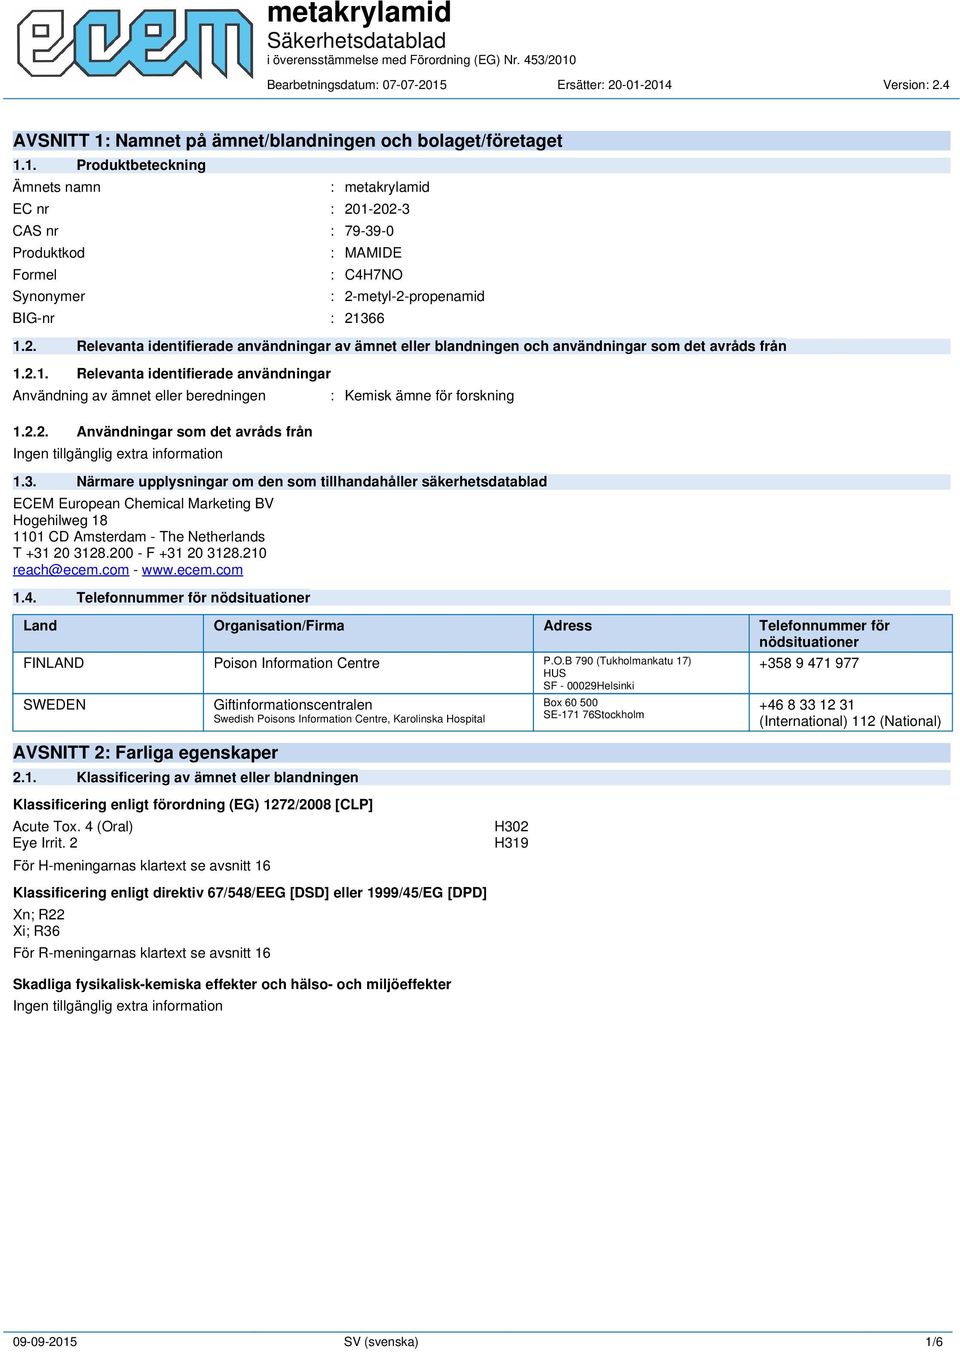 3. Närmare upplysningar om den som tillhandahåller säkerhetsdatablad ECEM European Chemical Marketing BV Hogehilweg 18 1101 CD Amsterdam - The Netherlands T +31 20 3128.200 - F +31 20 3128.